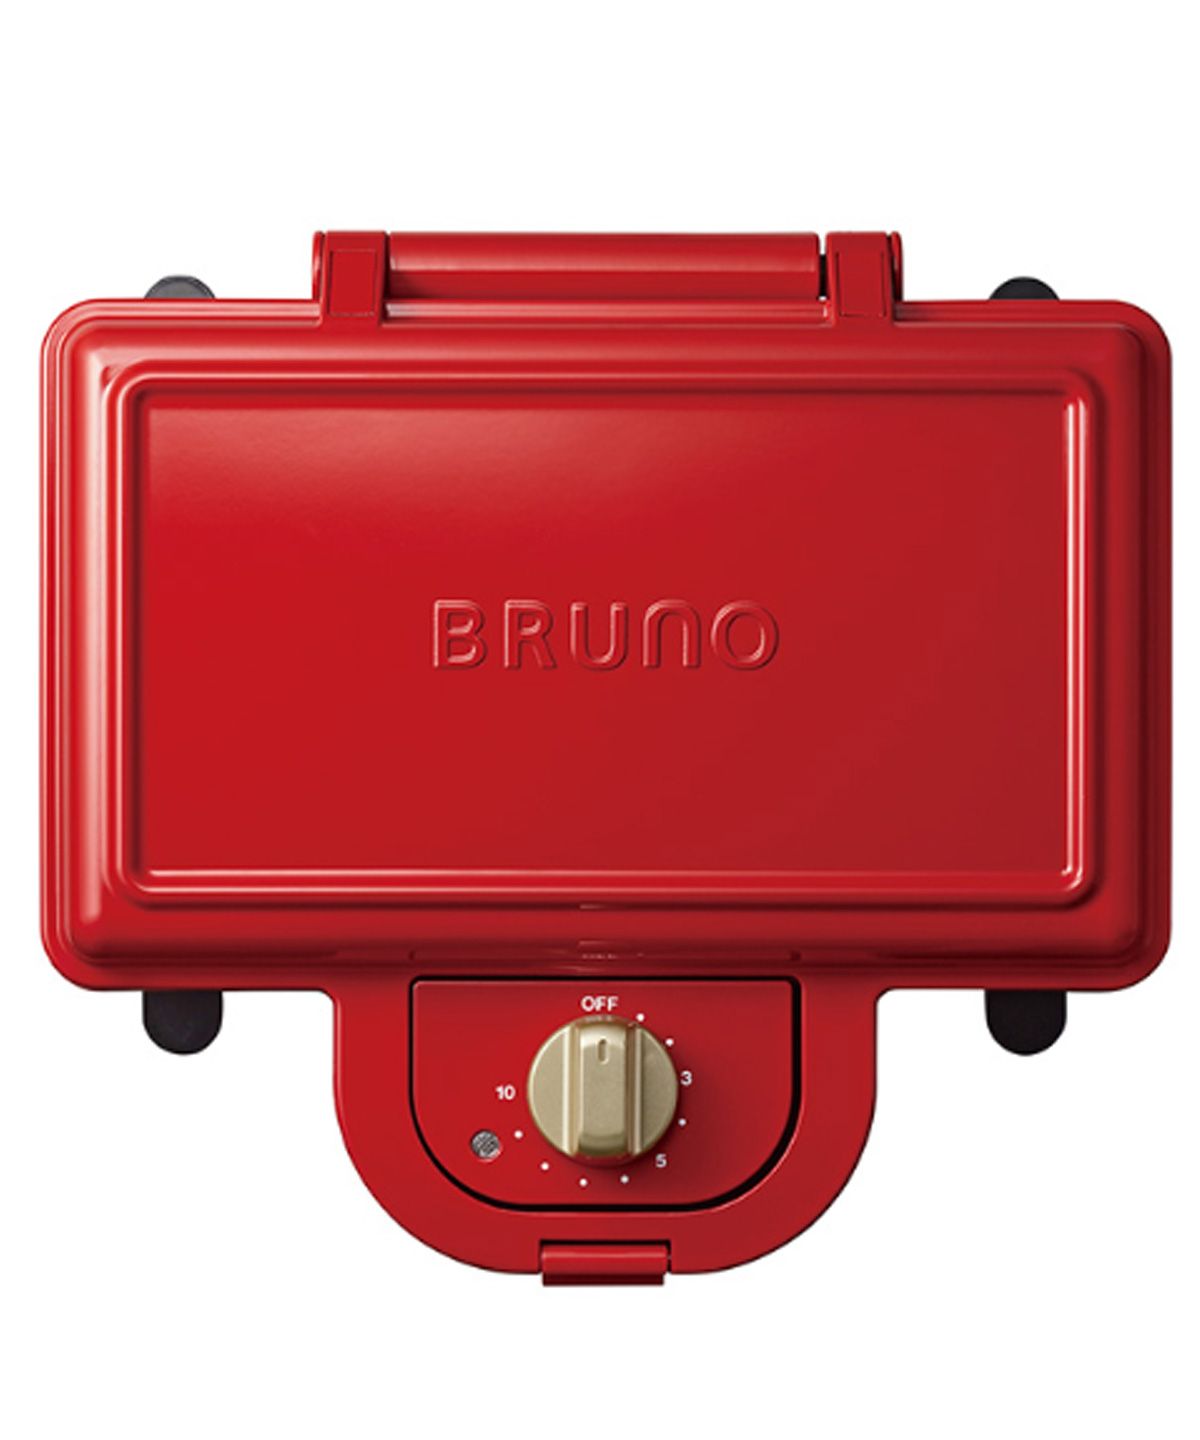 BRUNO ブルーノ ホットサンドメーカー ダブル 耳まで コンパクト タイマー 朝食 プレート パン トースト 家電 ホワイト レッド 白  BOE044